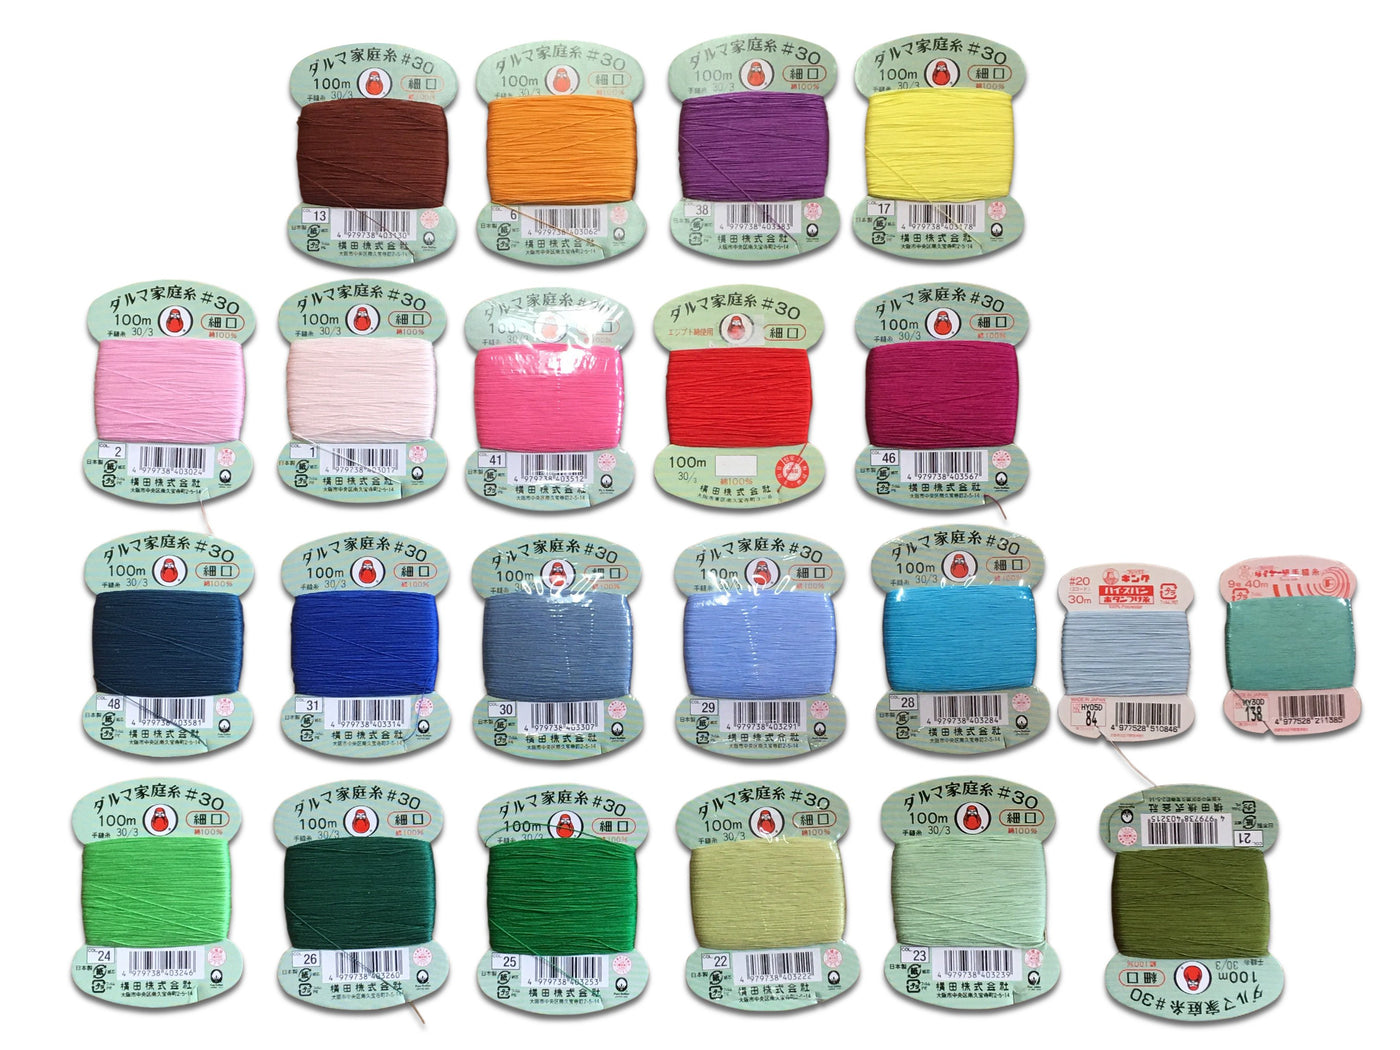 les couleurs disponibles pour le fil qui entoure le milieu du fouet à thé matcha - 1 à 3 couleurs possibles